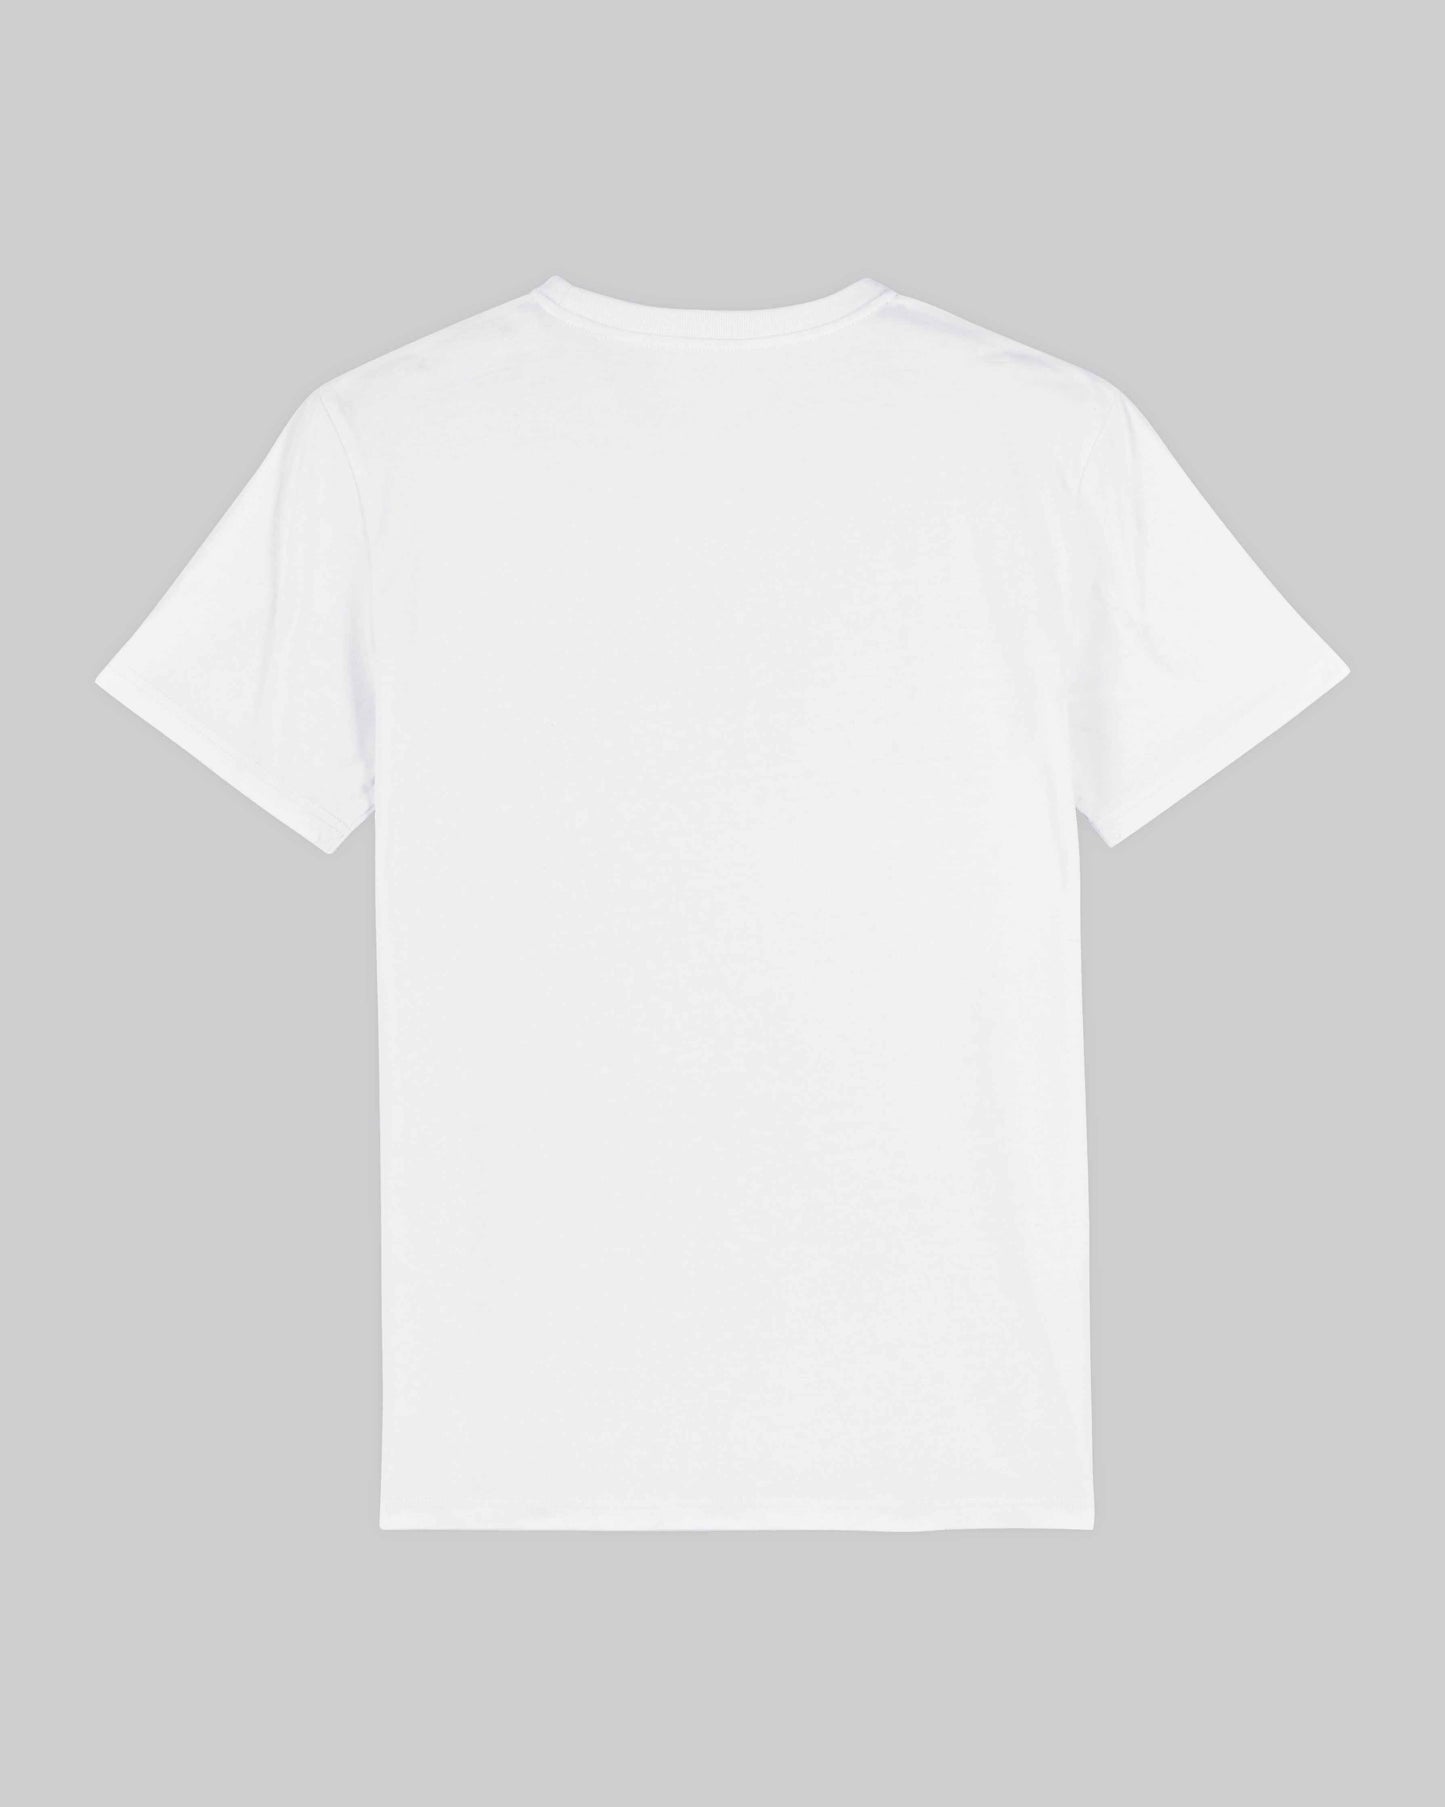 EINHORST® unisex Organic Shirt in Weiß mit dem Motiv "s-ally Regenbogen" in der Kombination schwarzer Regenbogen mit schwarzer Schrift, Bild von Shirt von hinten